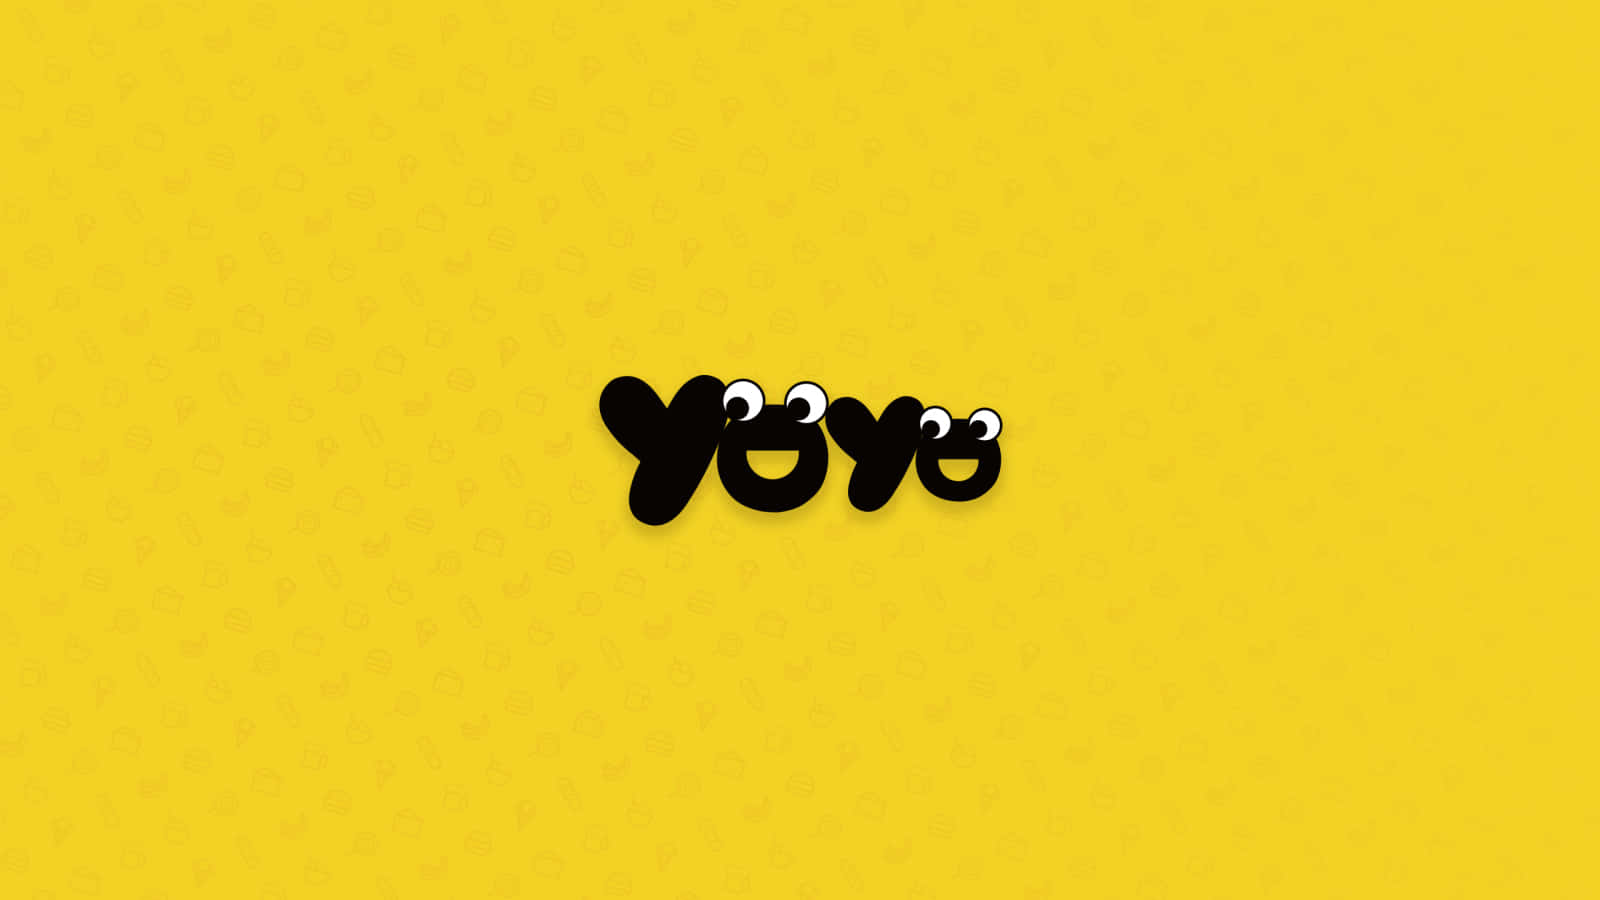 En gul baggrund med ordet yoyo på den Wallpaper